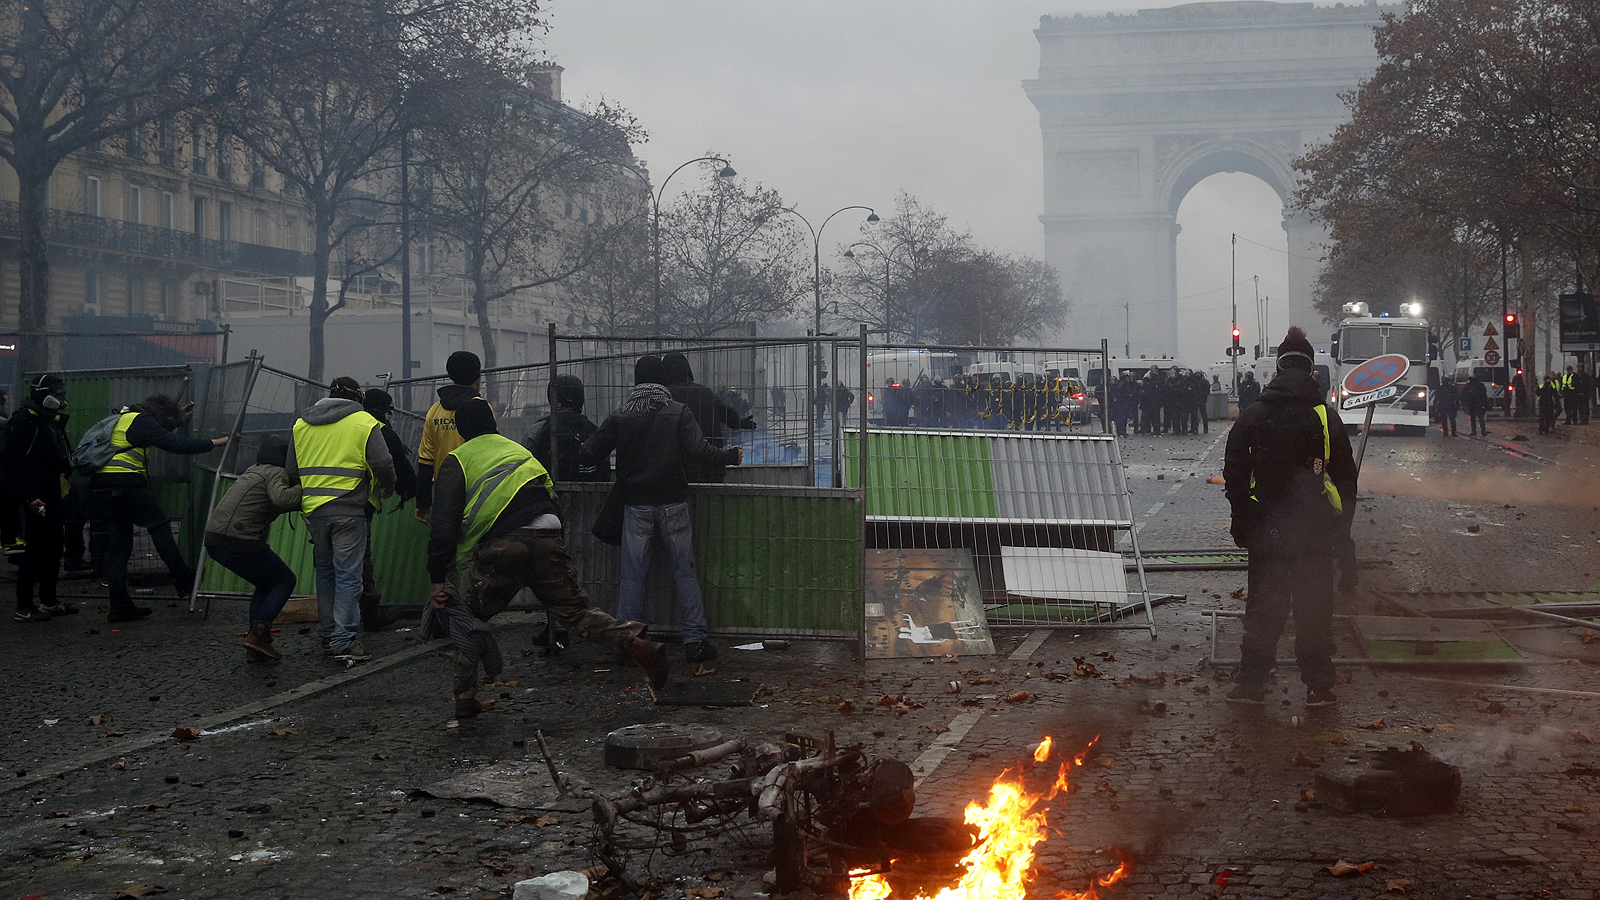 Маскирани демонстранти направиха опит да пробият полицейския кордон в центъра на френската столица като замеряха с камъни и димни гранати. Органите на реда отвърнаха със сълзотворен газ и водни оръдия, в опит да разпръснат тълпата.